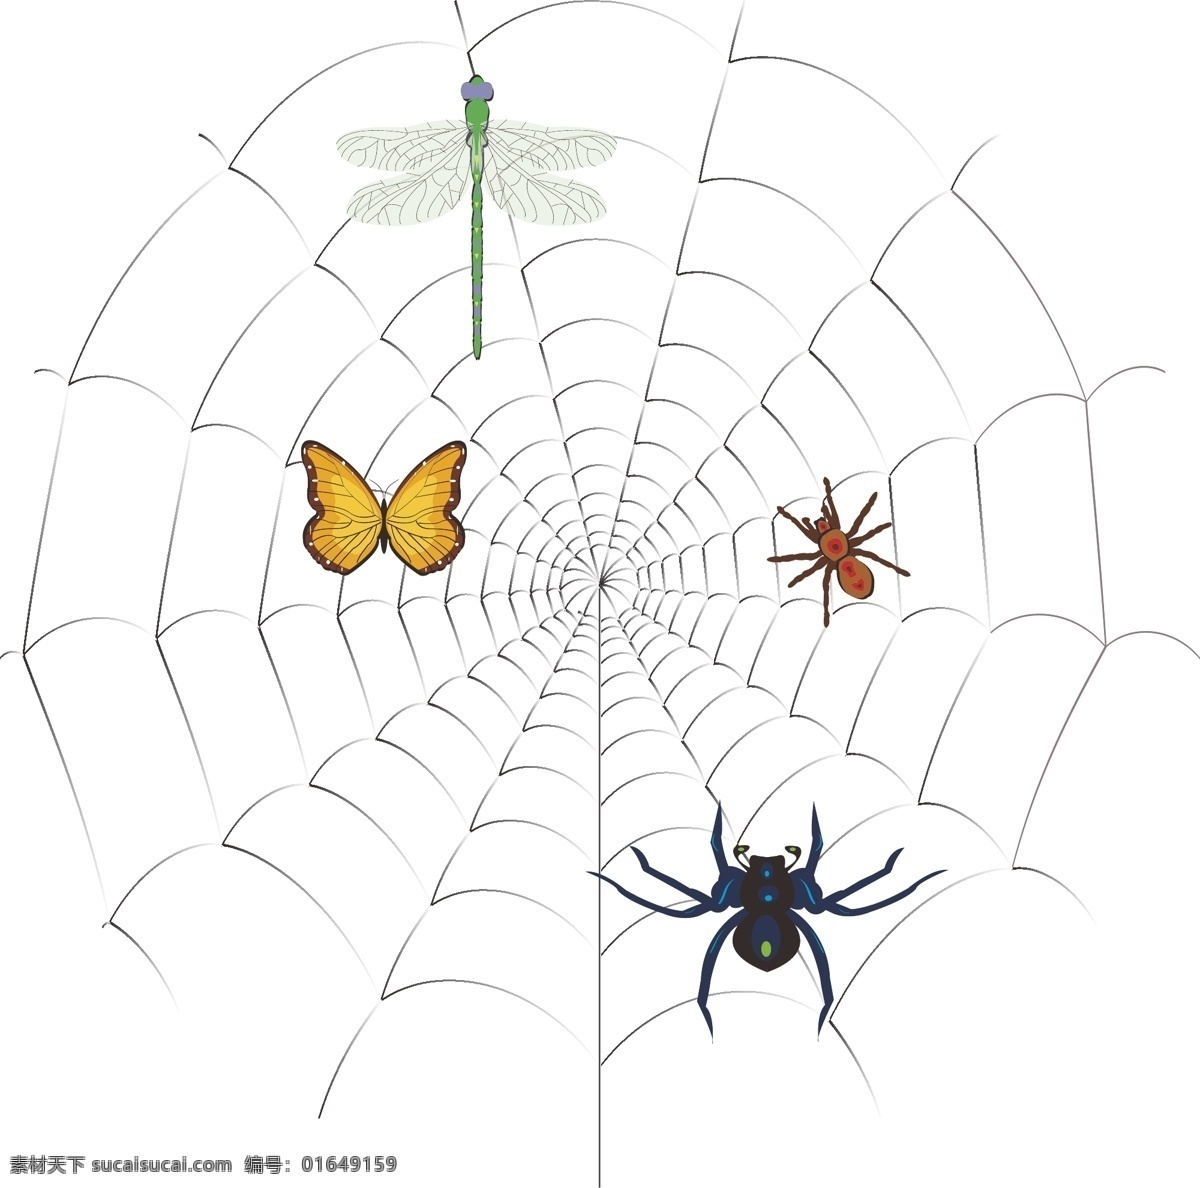 蜘蛛网 自然景观 蜘蛛 蝴蝶 蜻蜓 蜘蛛结网 生物世界 昆虫 广告 海报 展板